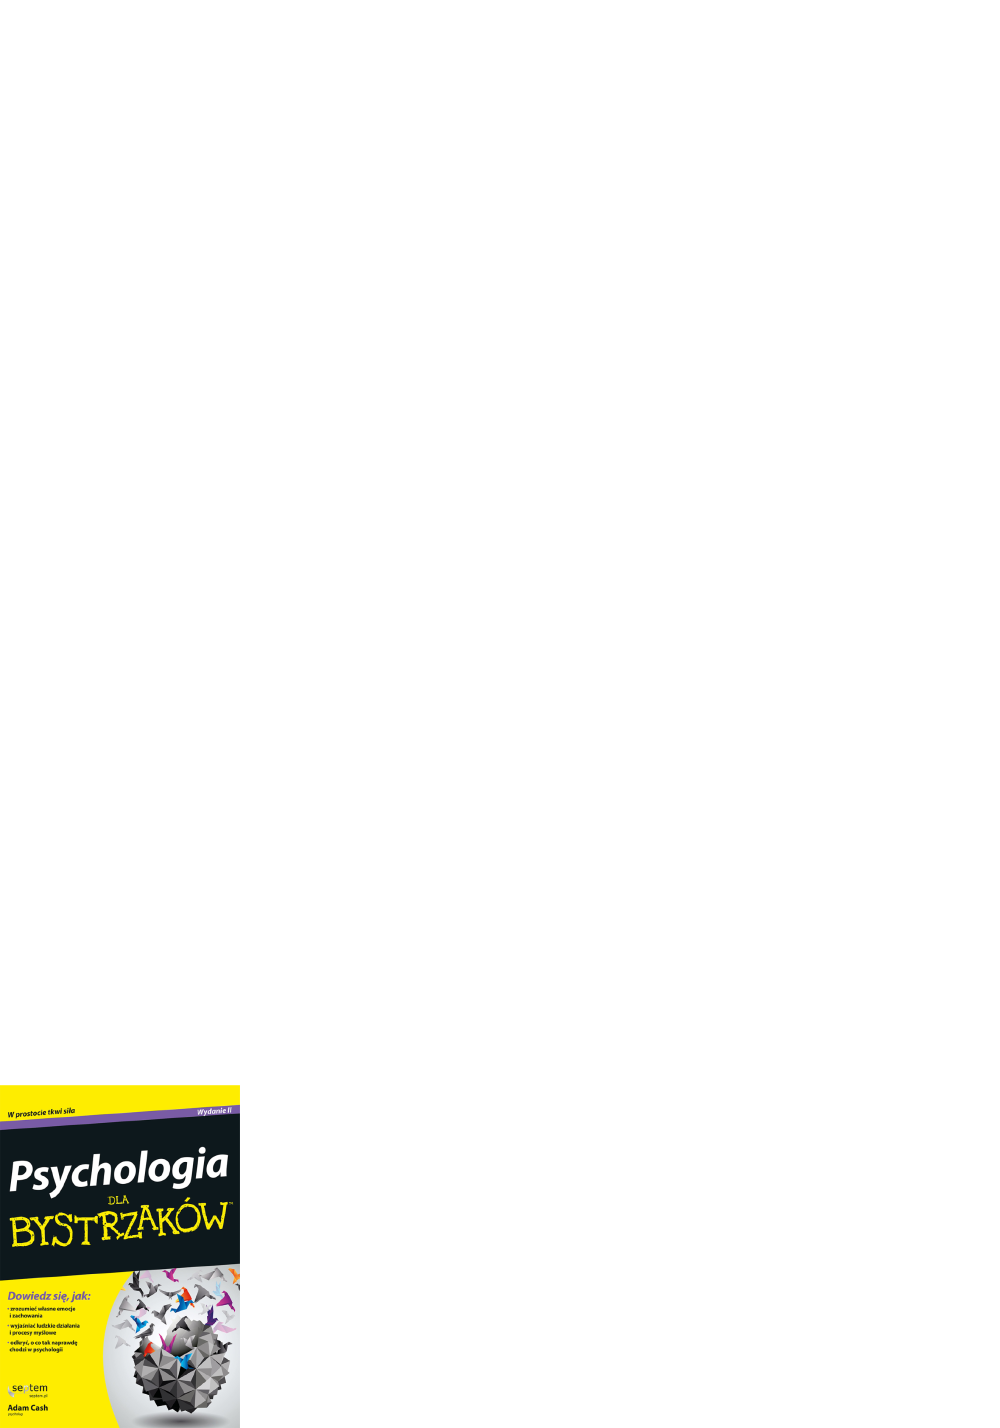 Psychologia dla bystrzaków pdf